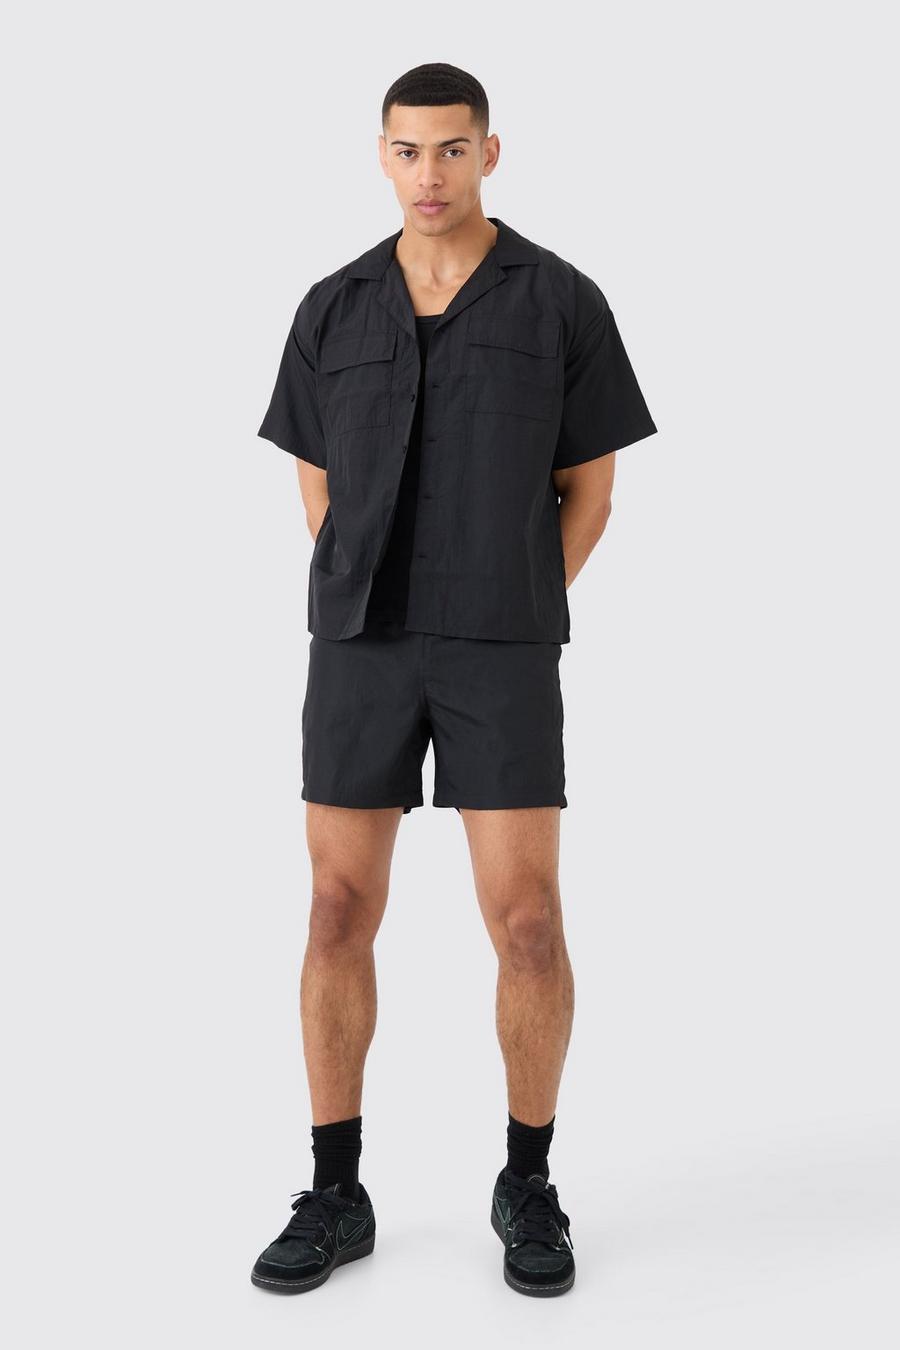 Black Gekreukeld Overhemd Met Nylon Zakken En Shorts Set